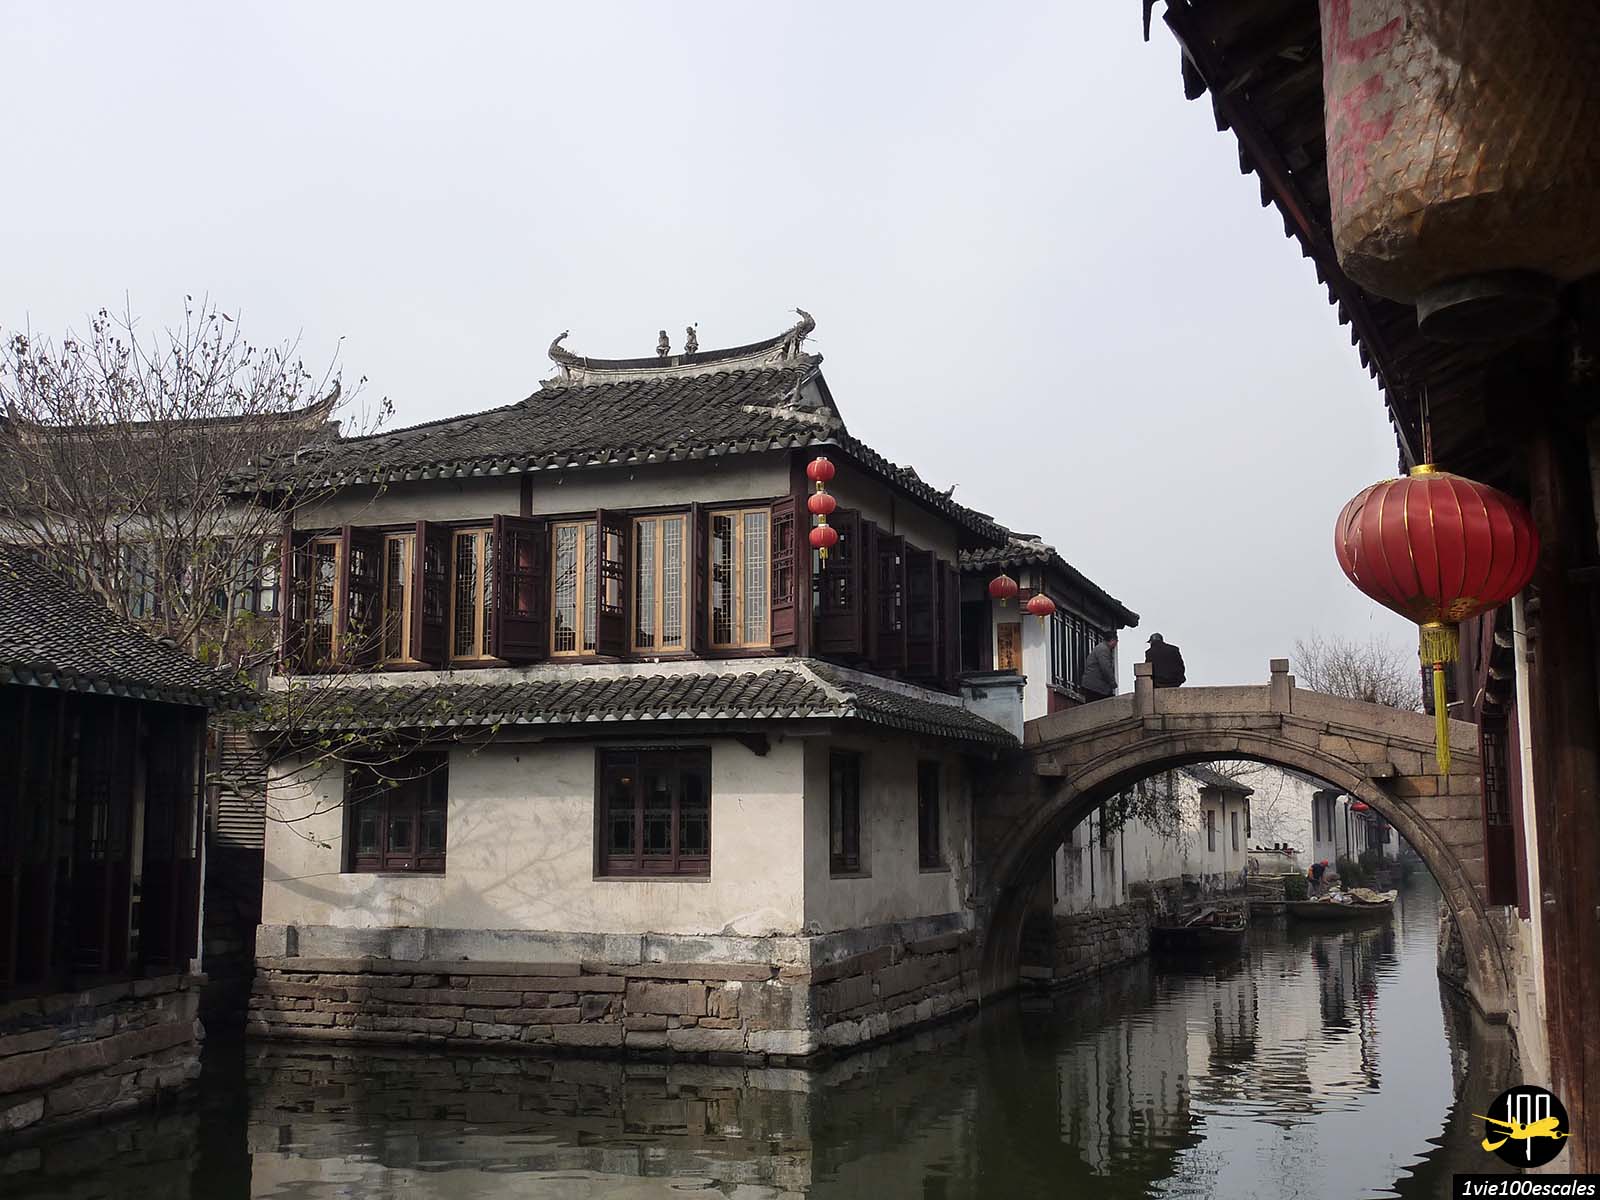 Les canaux et les ponts en pierre du village de Zhouzhuang près de Shanghai en Chine